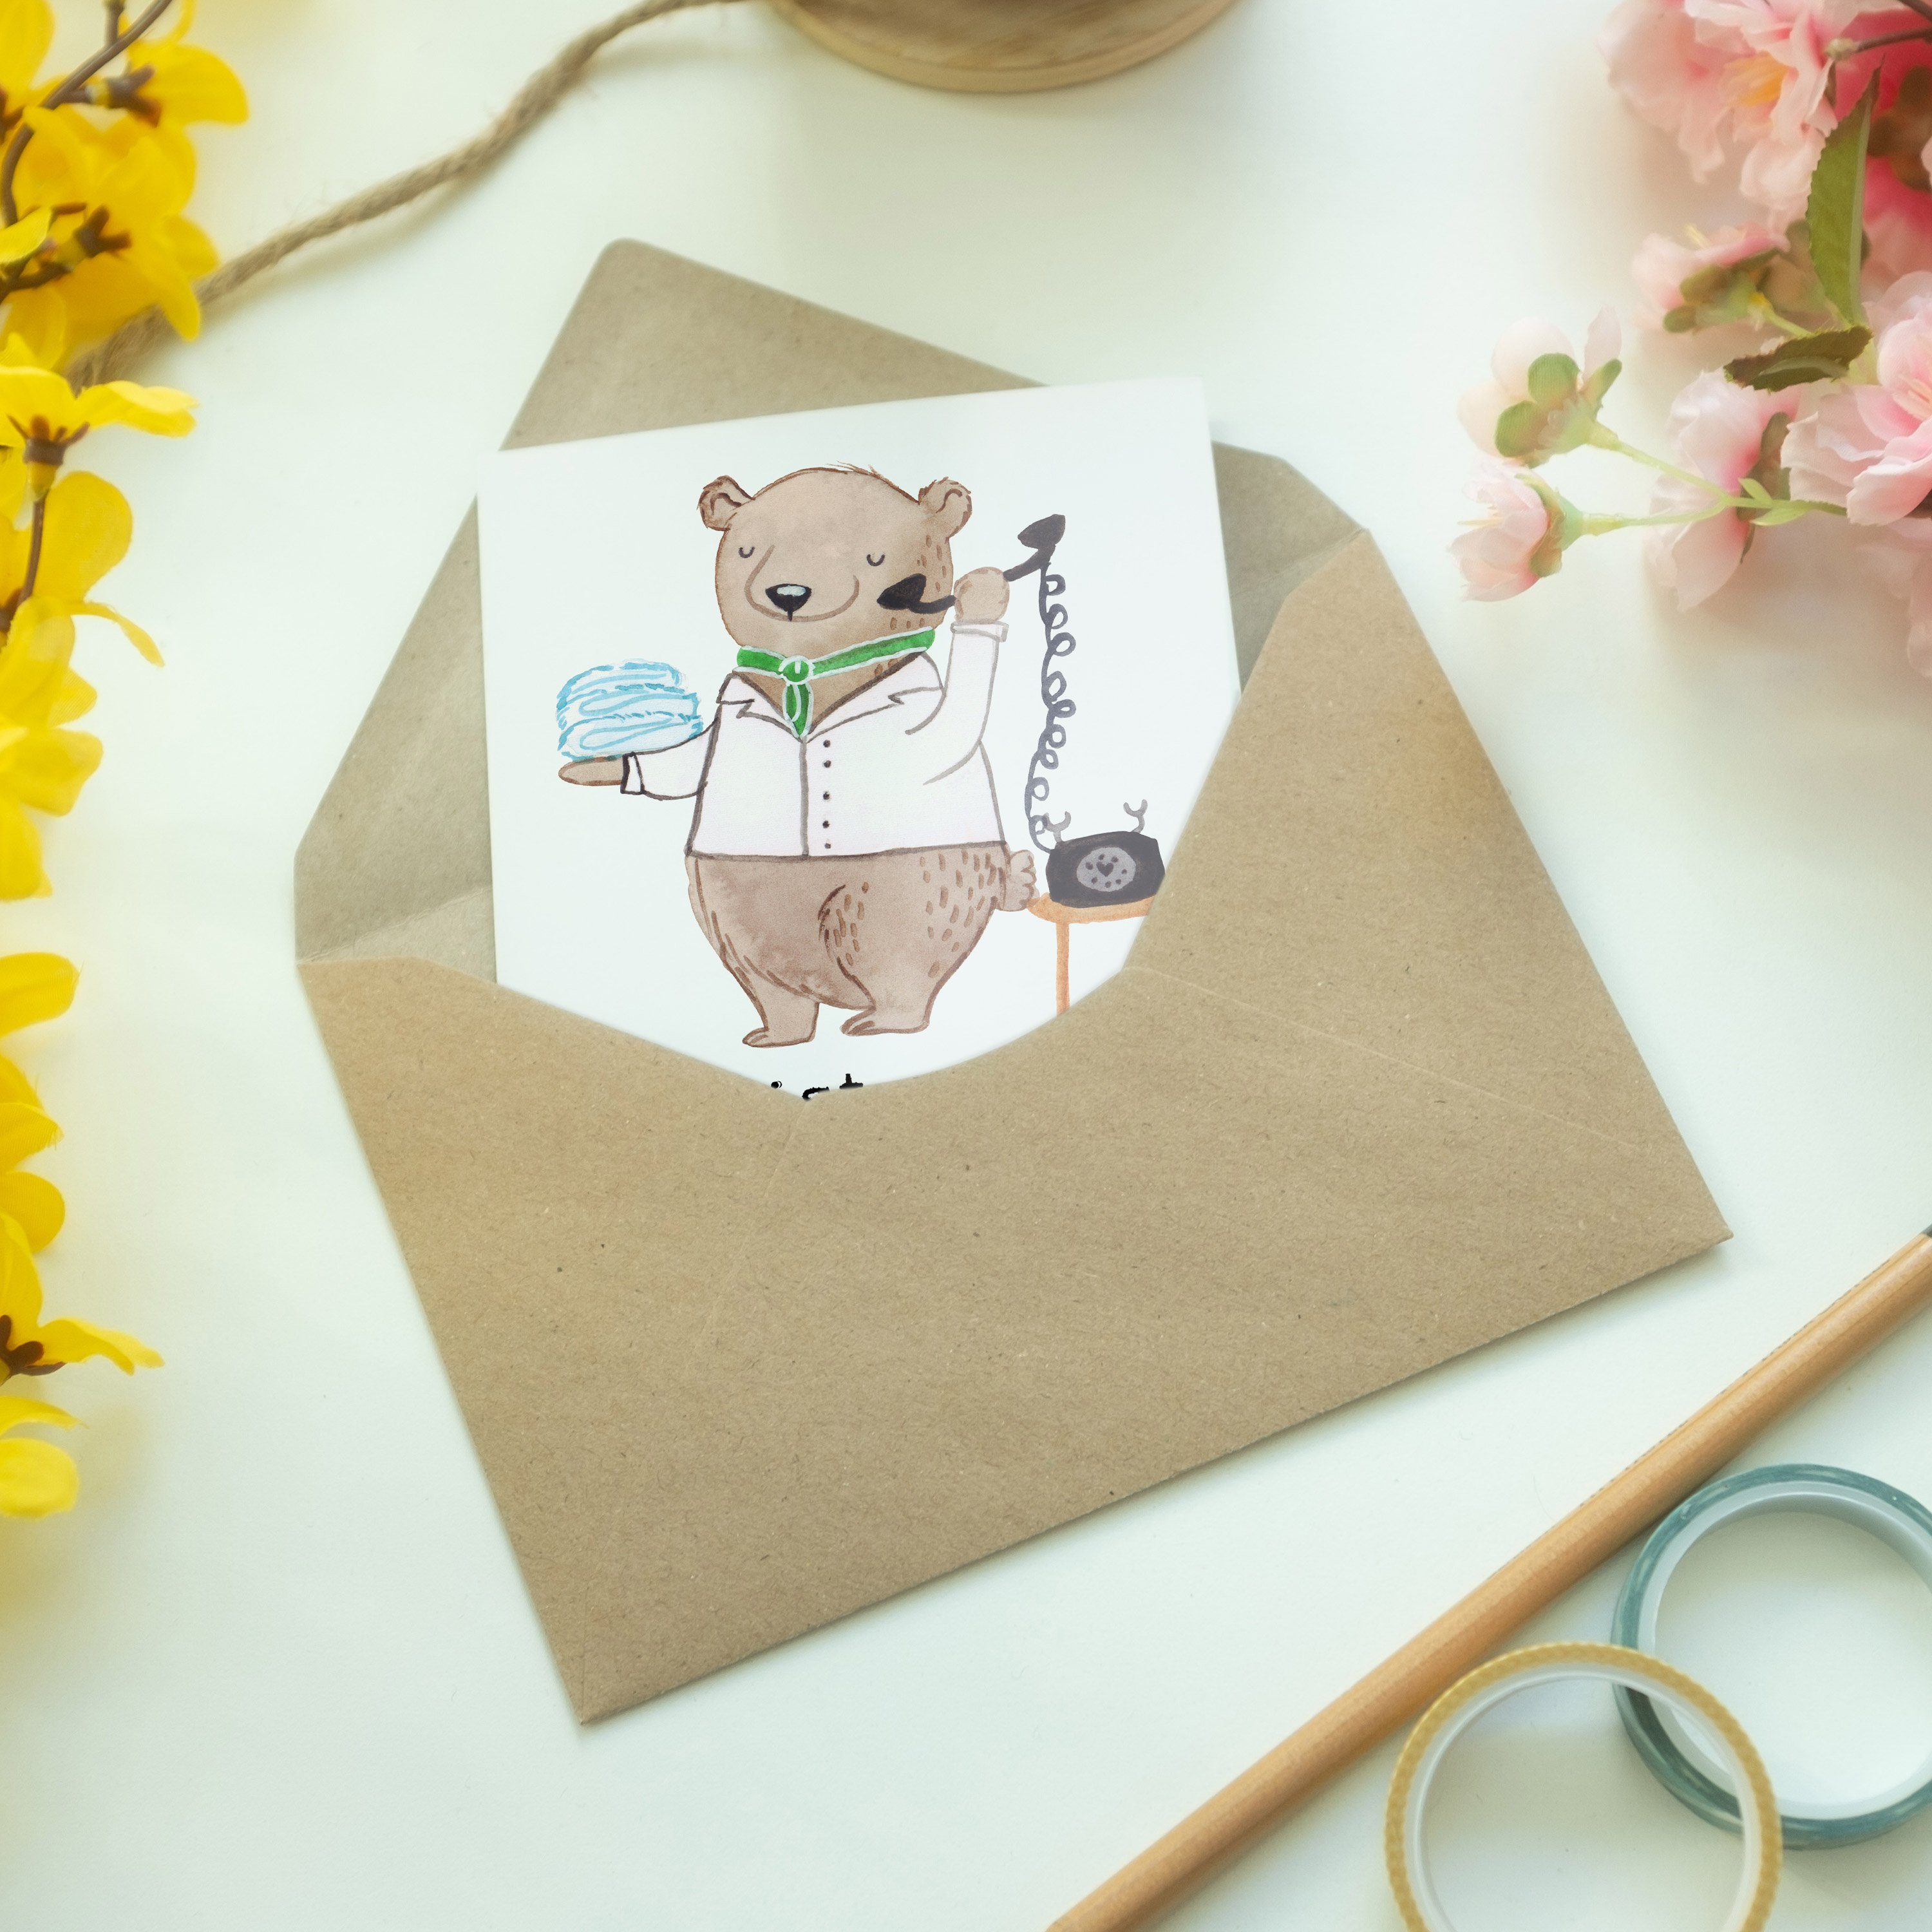 Hotelfachfrau Roomservice, - Mrs. Geschenk, Panda Mr. Grußkarte Herz - & mit Einladungskart Weiß